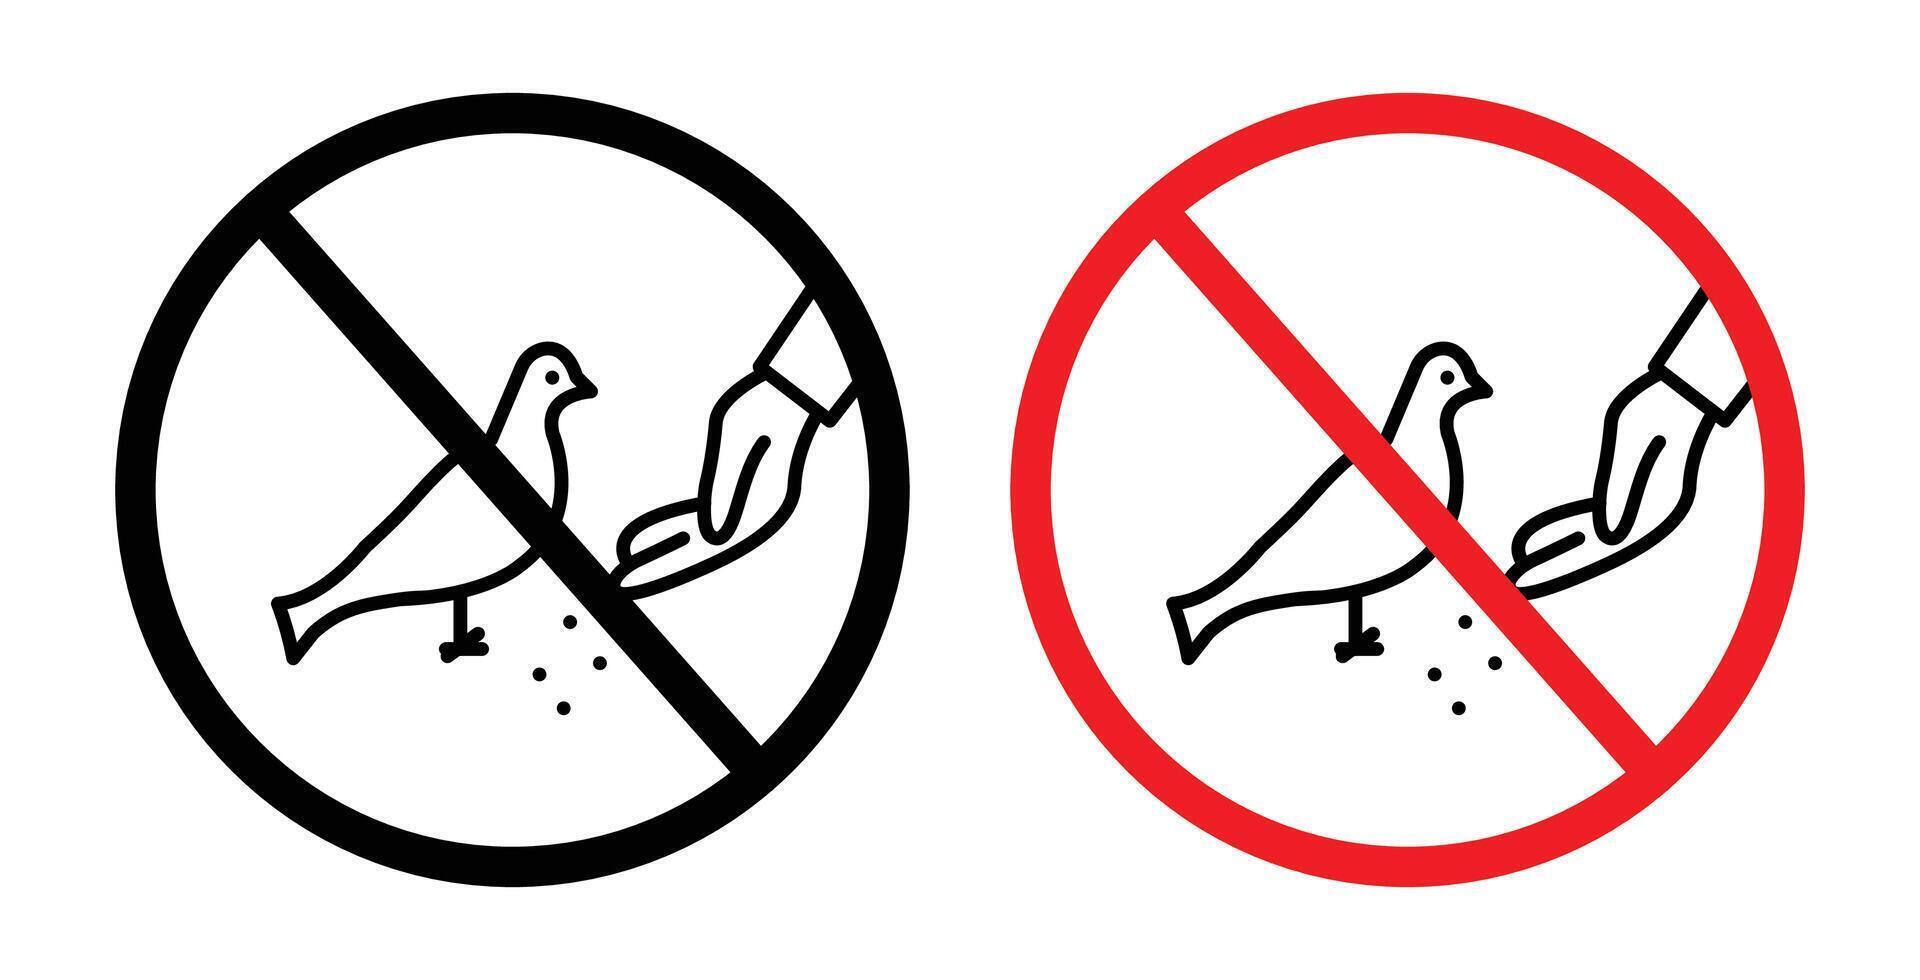 Do not feed birds sign vector